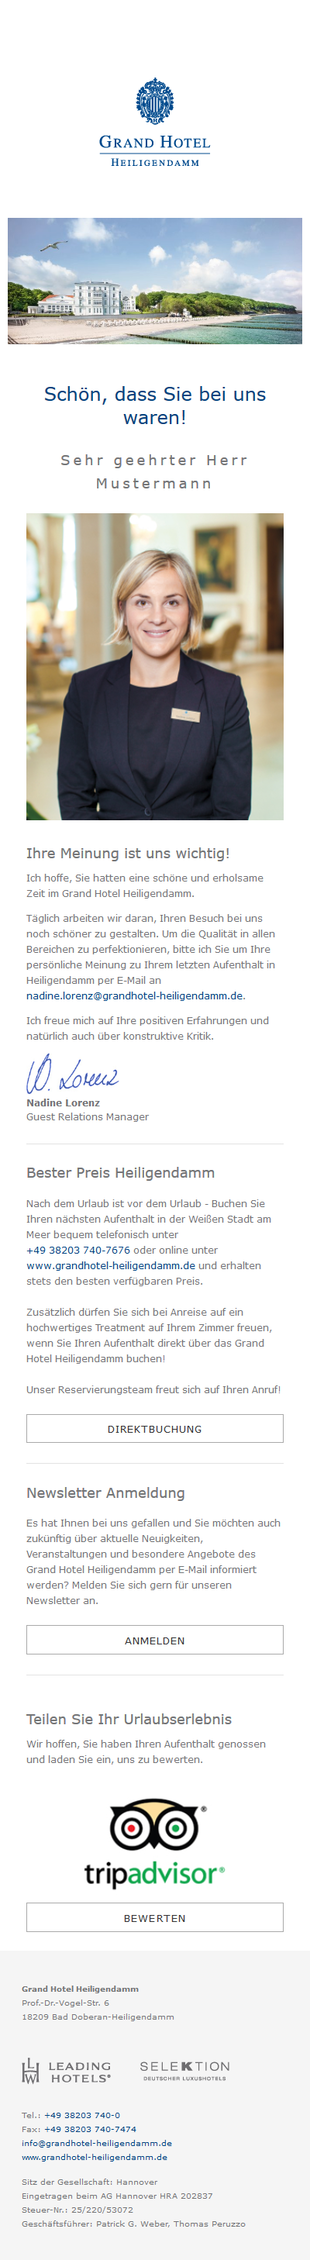 Poststay-Mail für das Grand Hotel Heiligendamm